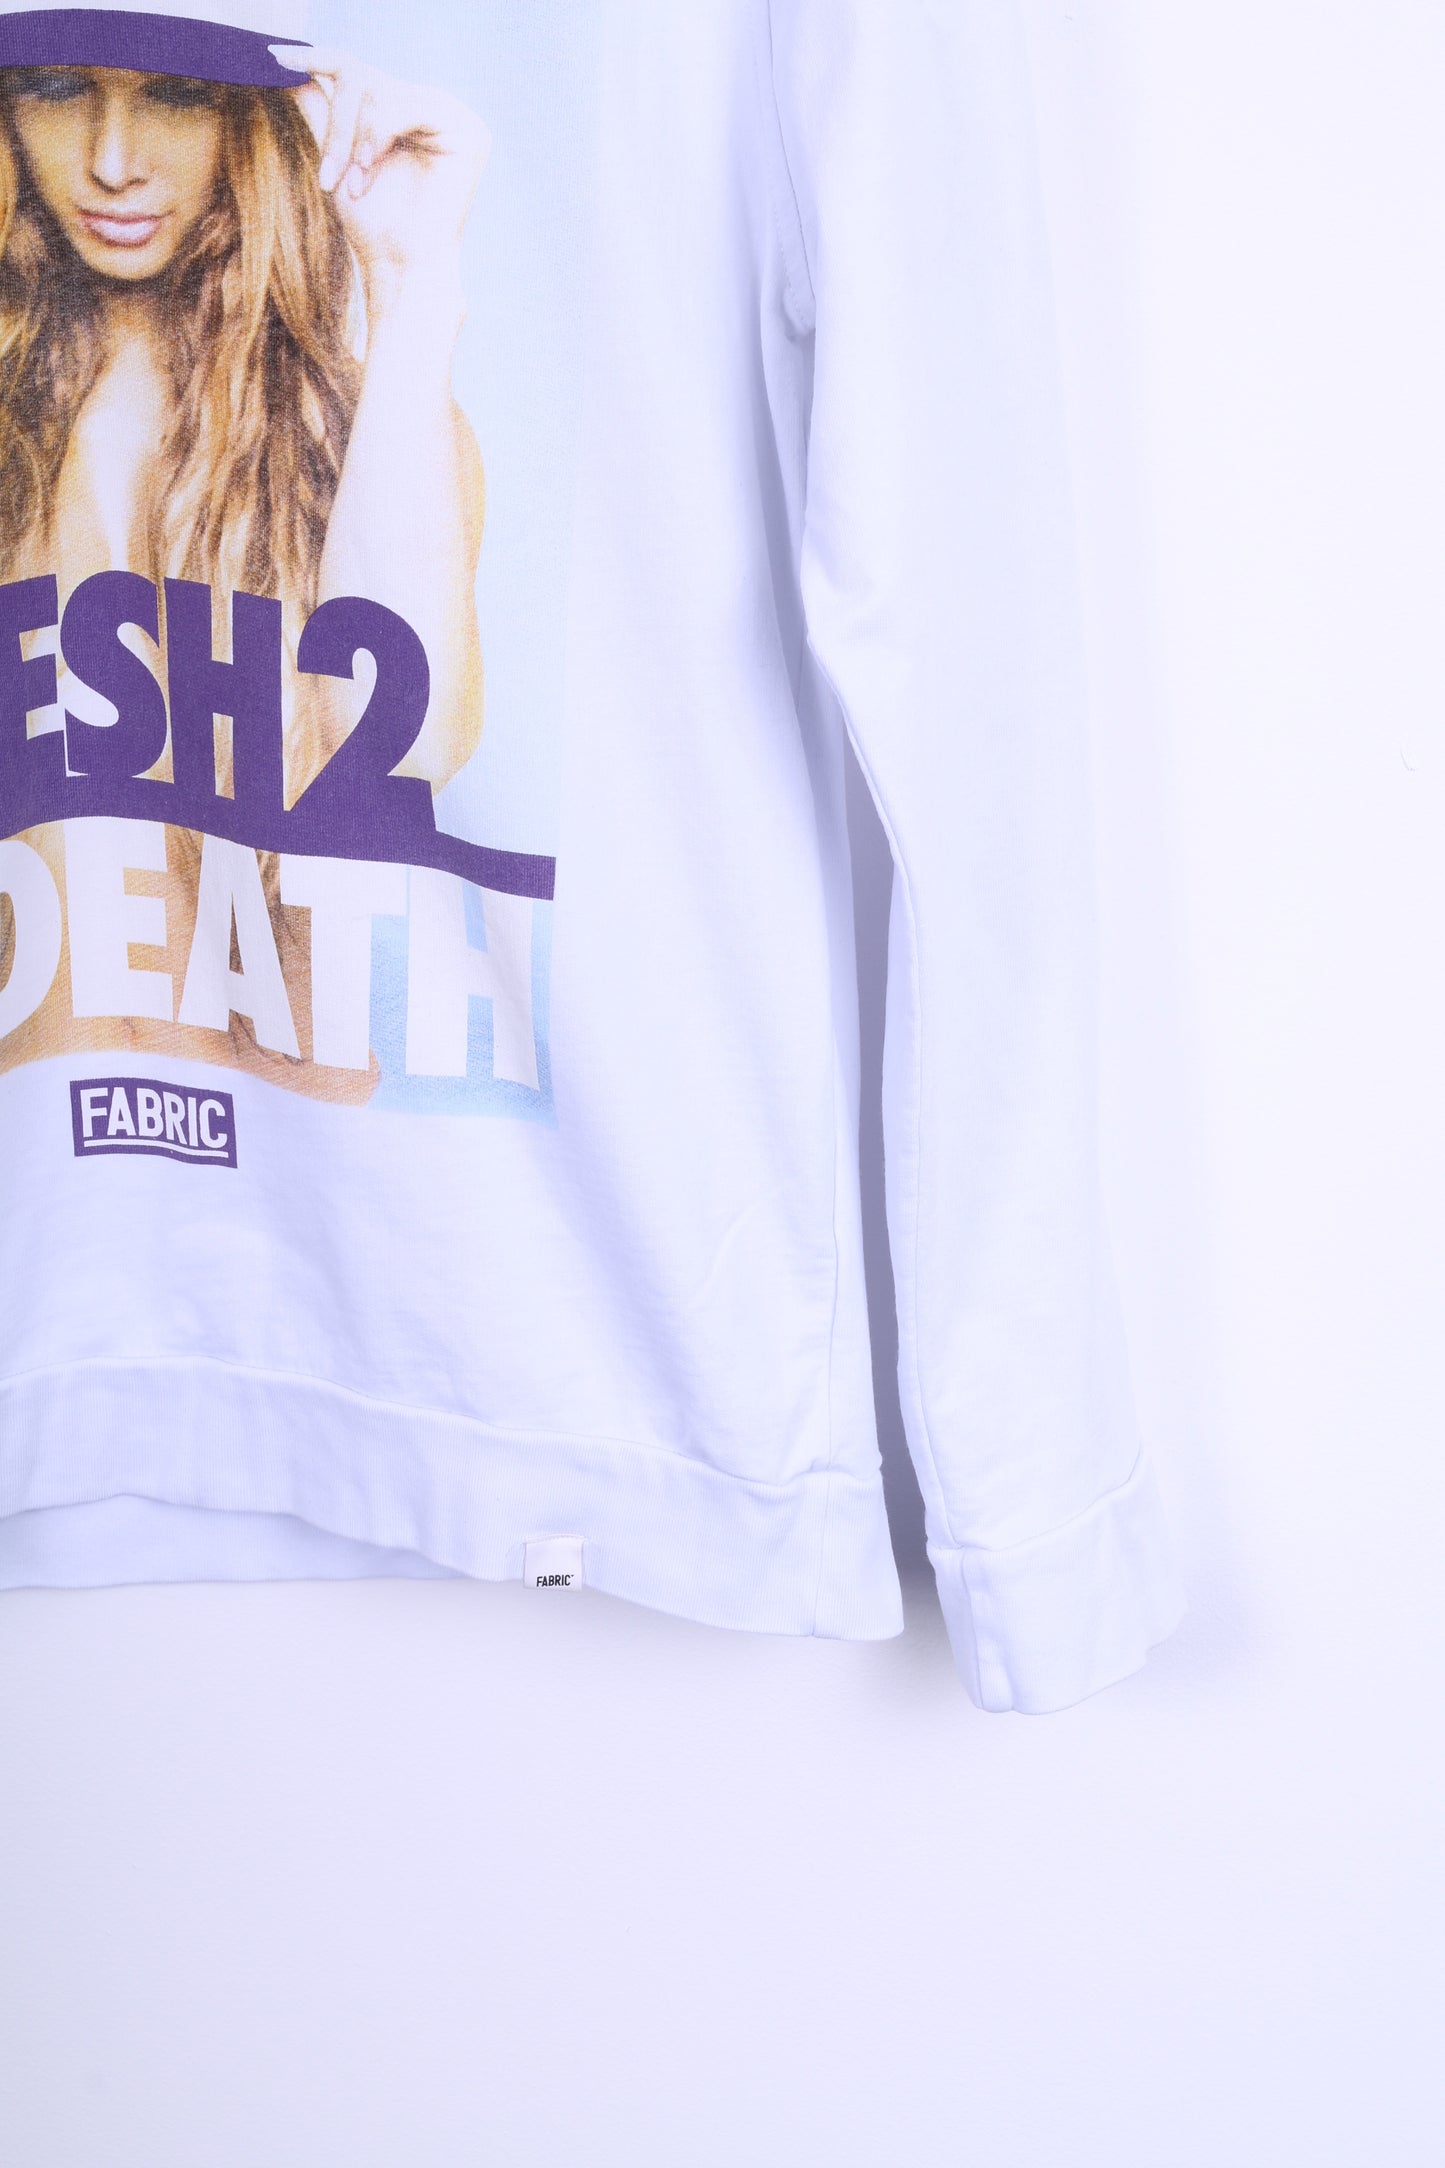 FABRIC Sweat-shirt XL pour femme Blanc Fresh2 Death Cotton